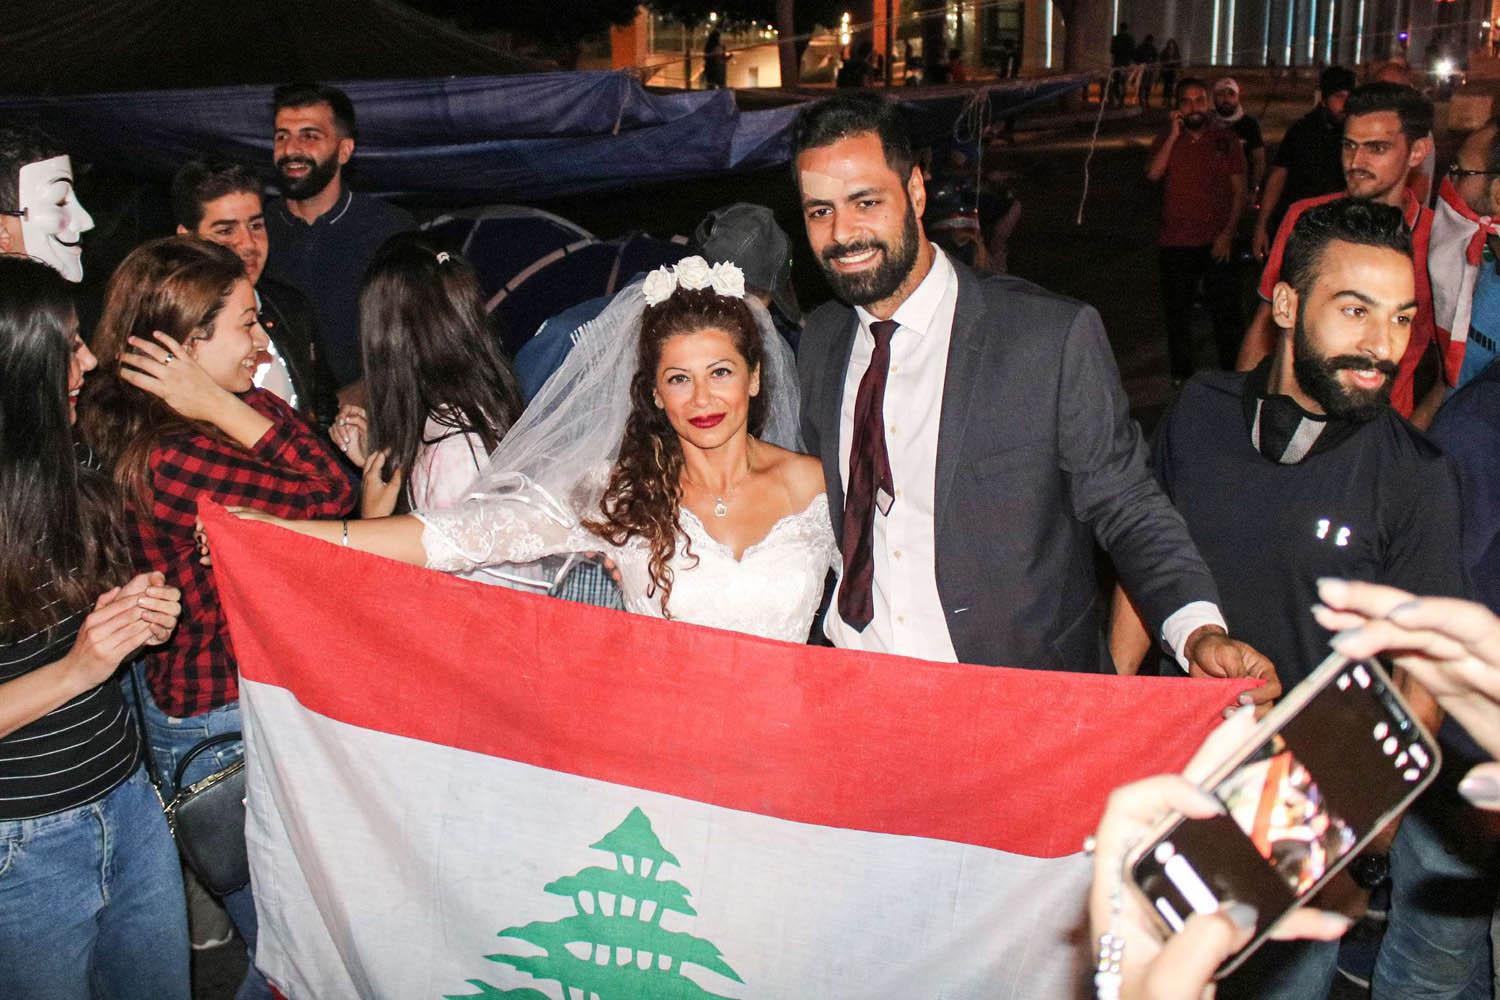 عروسان ناشطان يحتفلان بزواجهما وسط المتظاهرين في بيروت